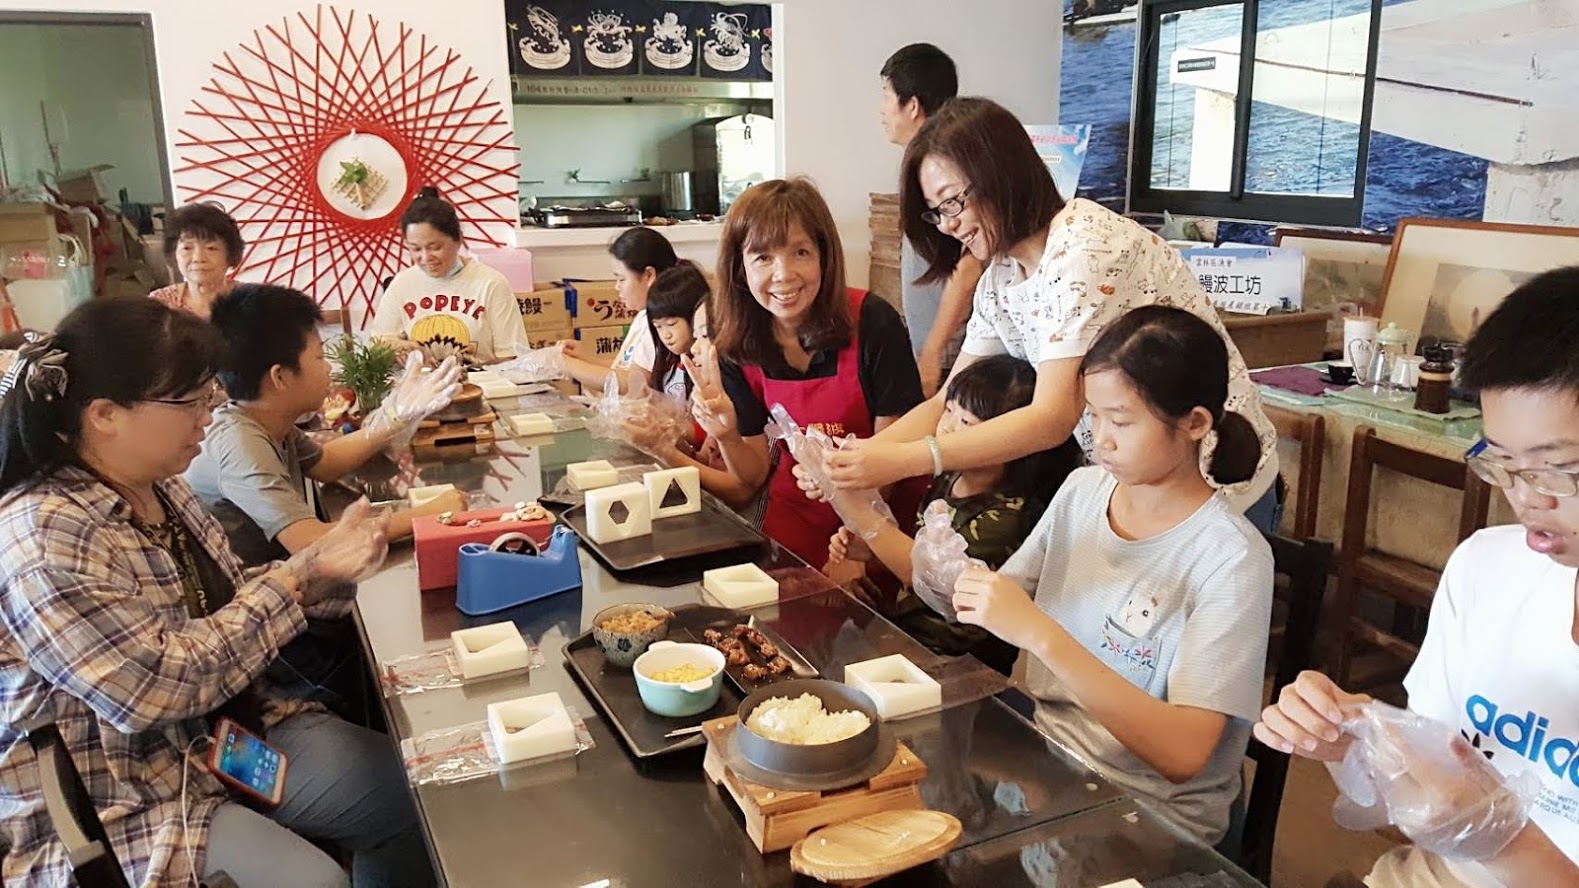 鰻魚御飯糰DIY也是很受歡迎的體驗活動。